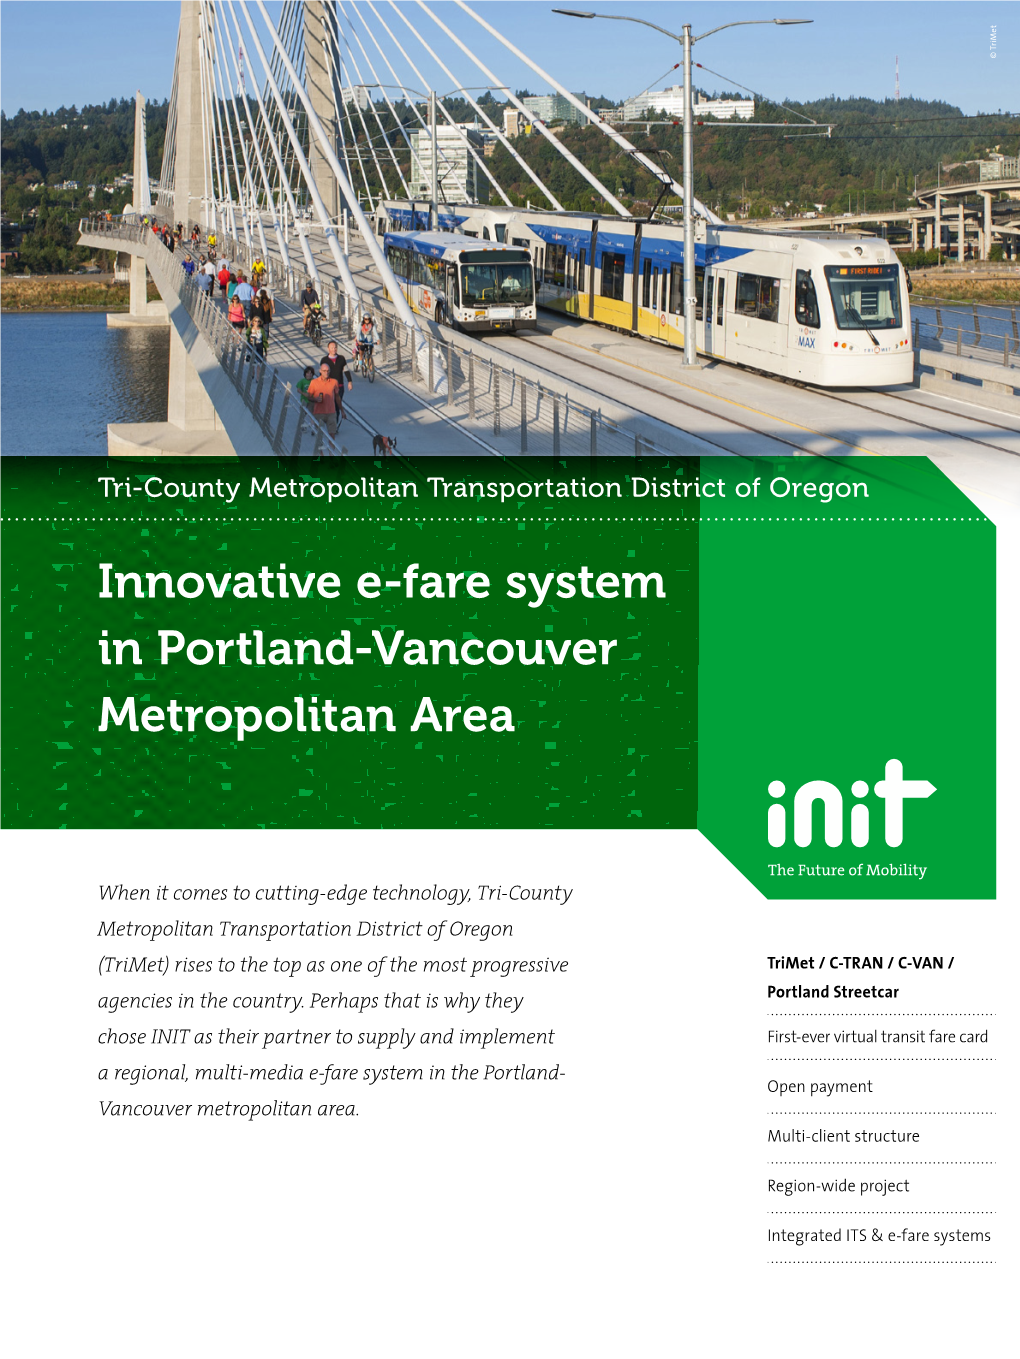 Innovative E-Fare System for Trimet in Portland Innovative E-Fare